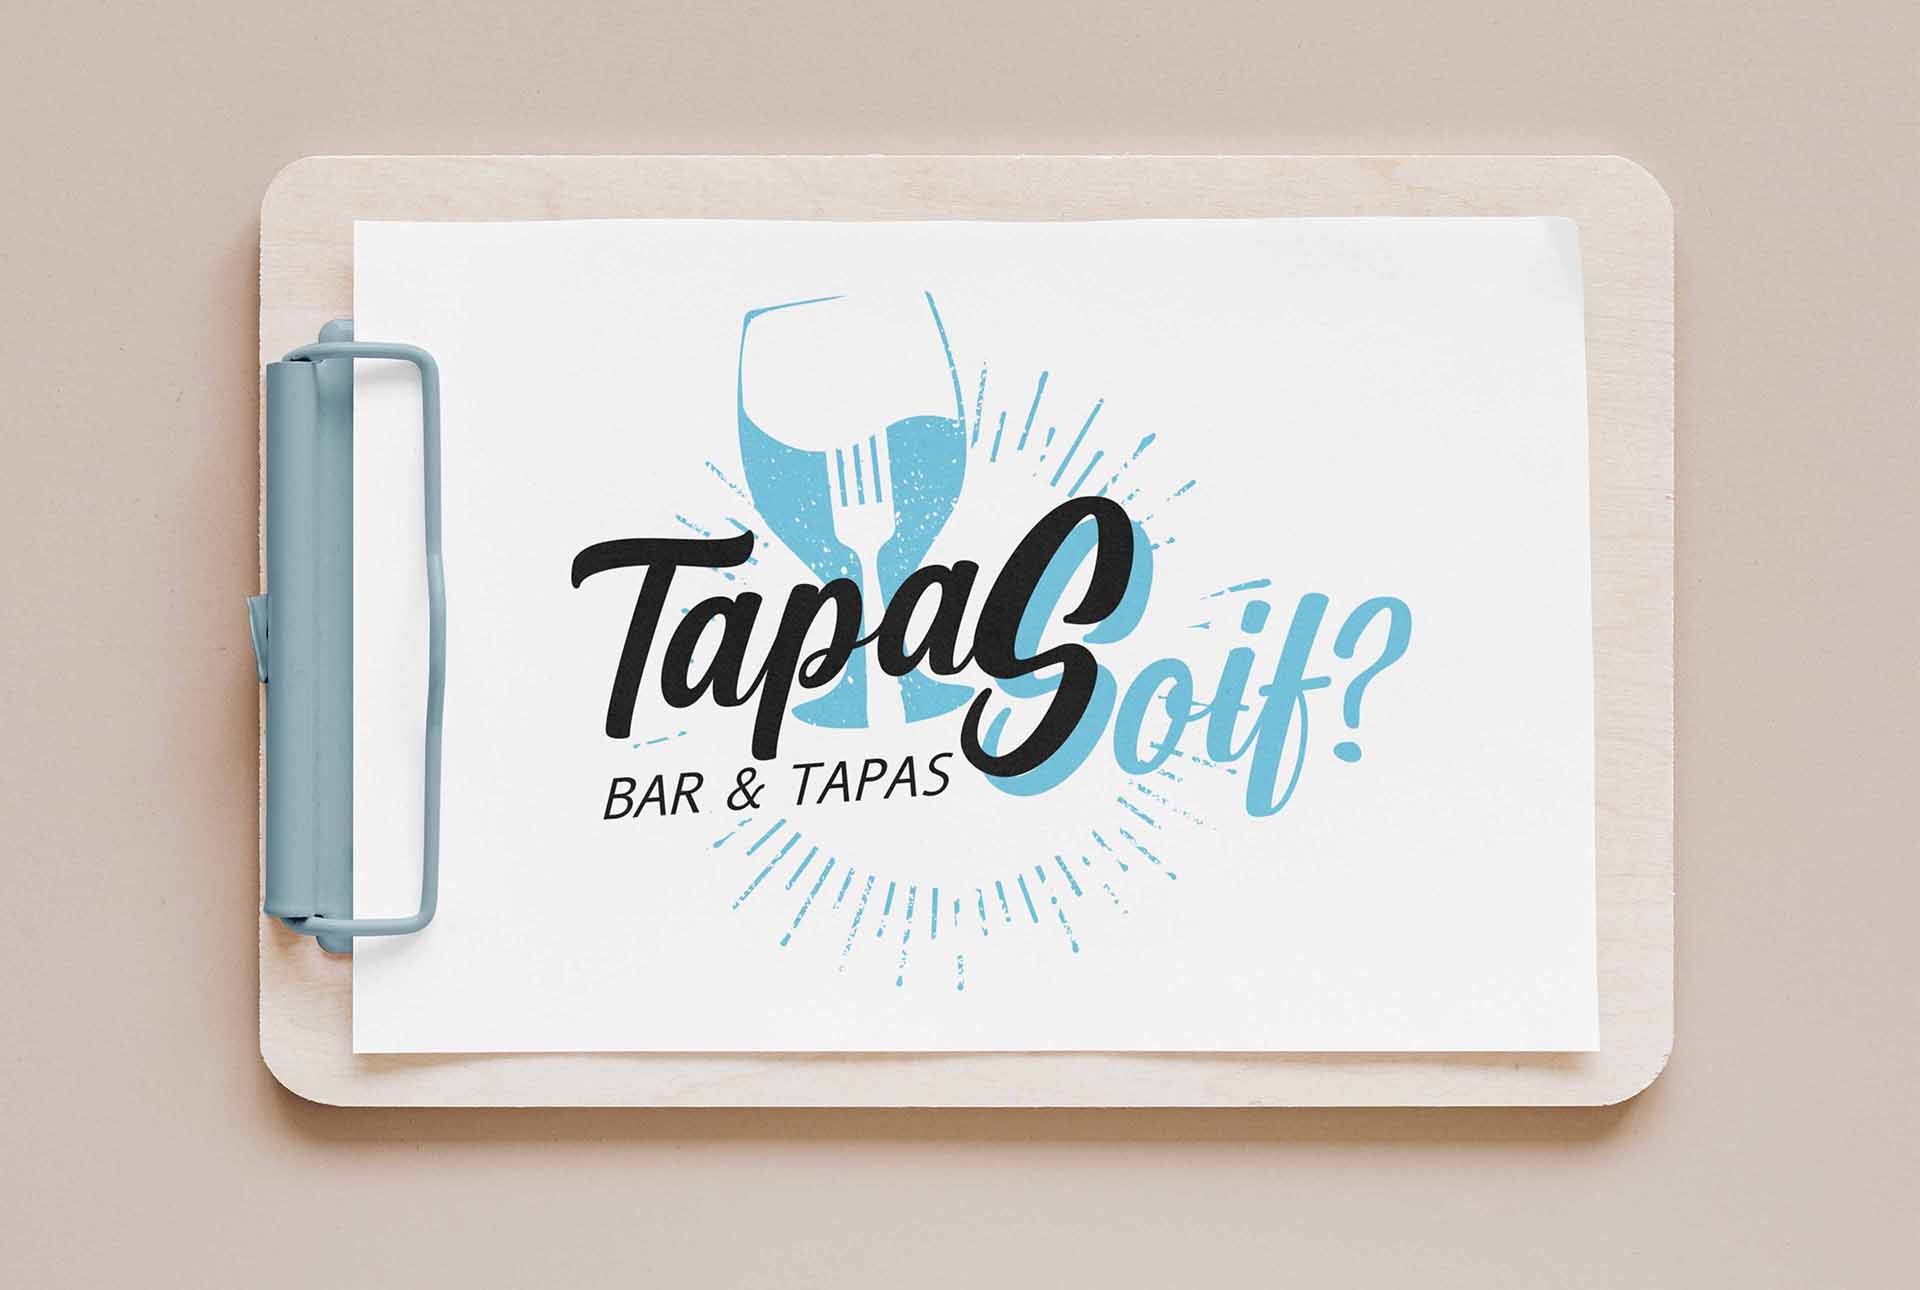 tapasoif creation logo restaurant graphiste grenoble